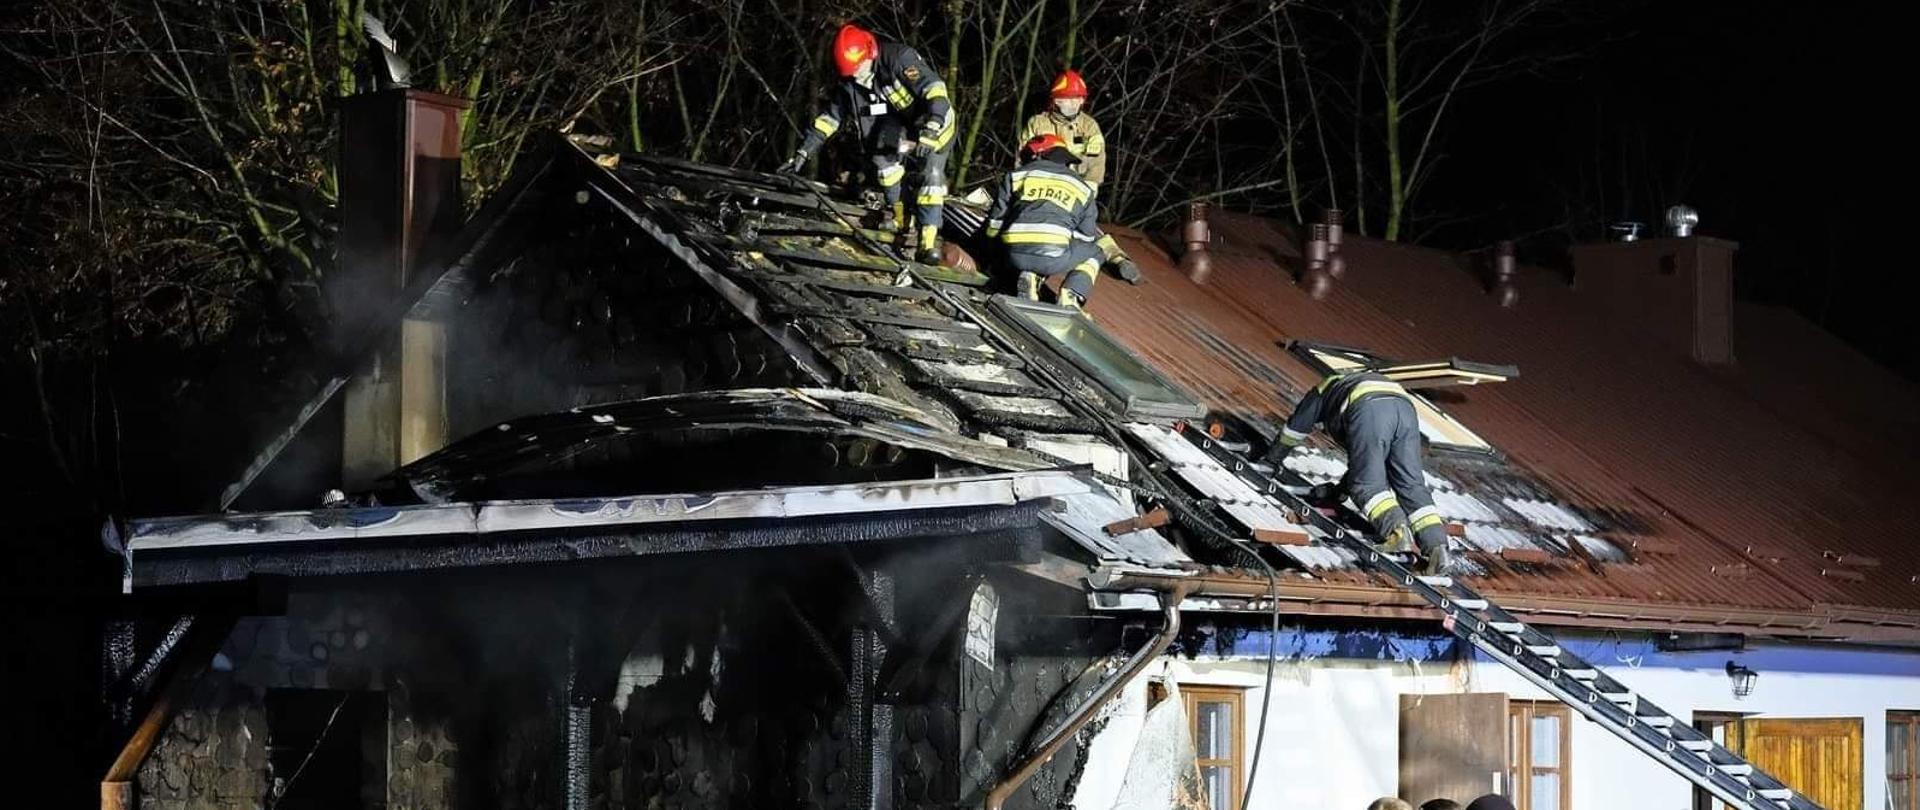 Na zdjęciu widoczny jest częściowo spalony budynek jednorodzinny. Spalone są:elewacja ściany szczytowej oraz część dachu. Na dachu strażacy prowadzą prace rozbiórkowe.